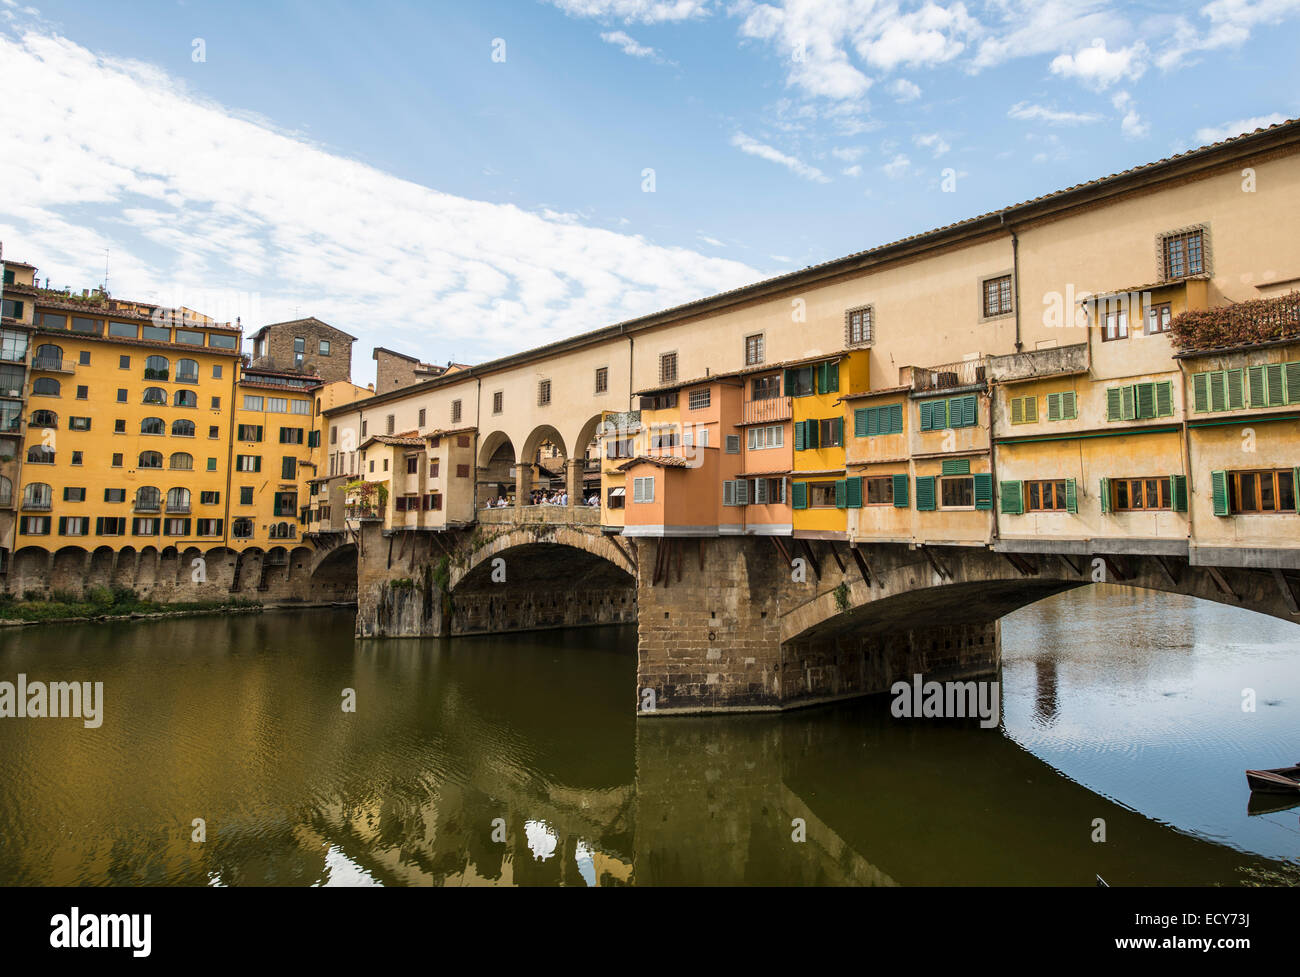 Il centro storico di Firenze con il Ponte Vecchio sull'Arno, Sito Patrimonio Mondiale dell'UNESCO, Firenze, Toscana, Italia Foto Stock